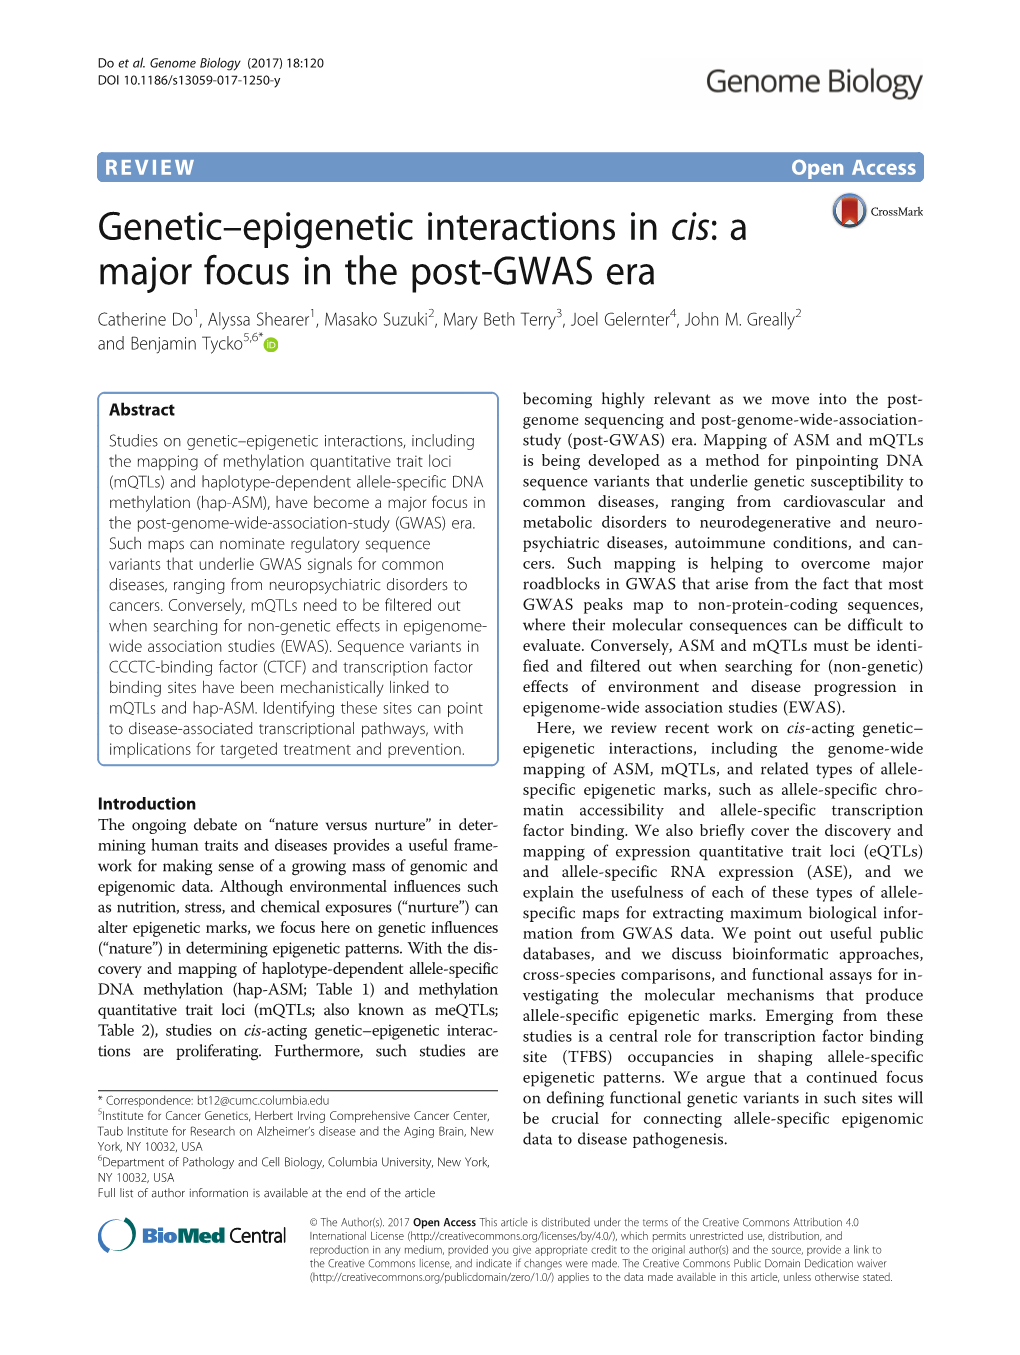 Genetic–Epigenetic Interactions in Cis: a Major Focus In